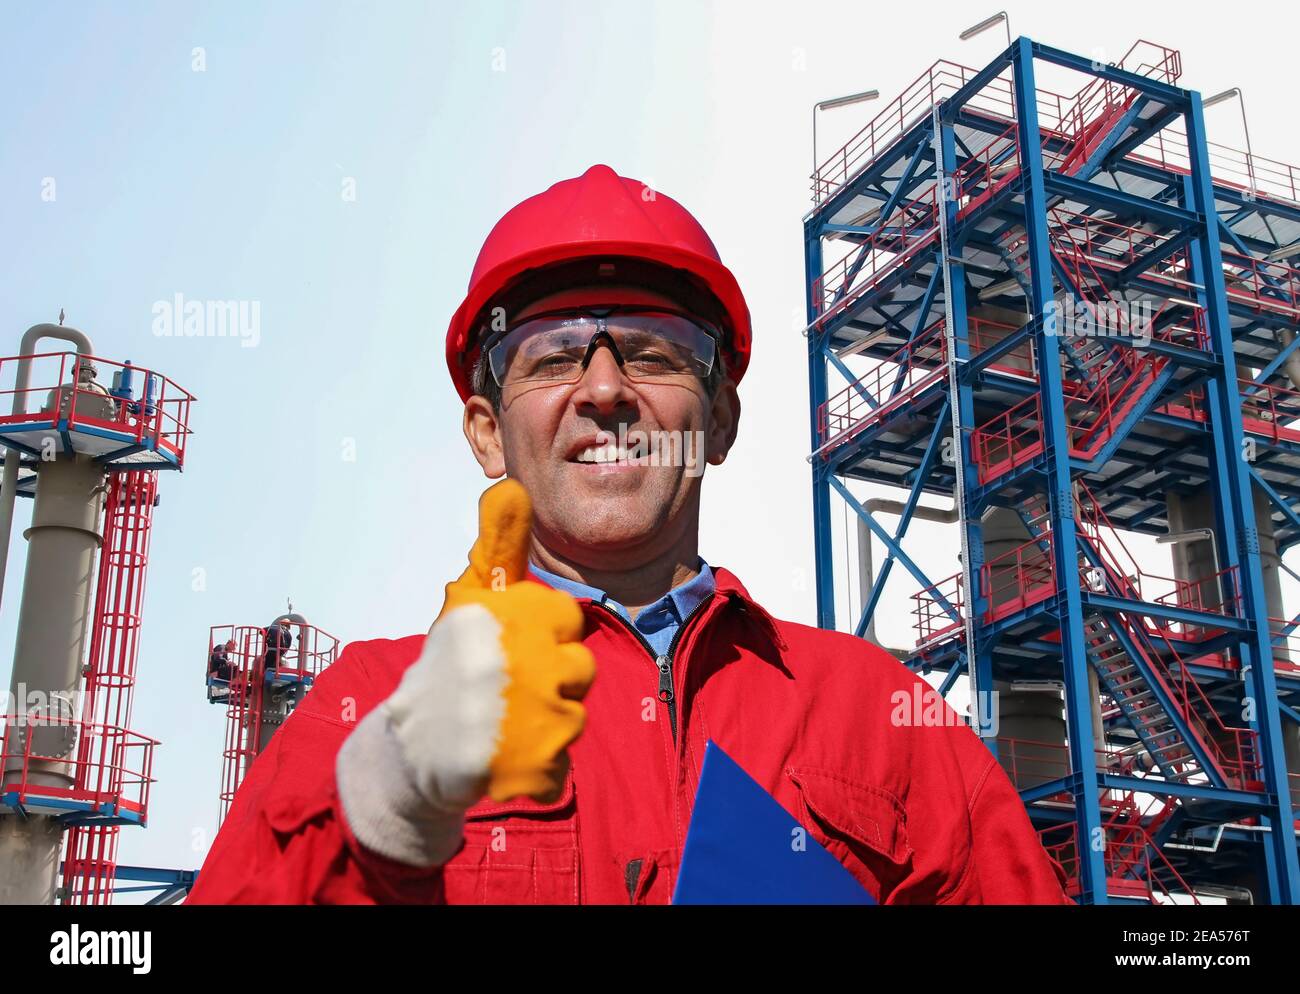 Un ouvrier du pétrole heureux de Red HardHat qui donne son pouce devant la raffinerie de pétrole et de gaz. Portrait de l'homme souriant en vêtements de travail de protection. Banque D'Images